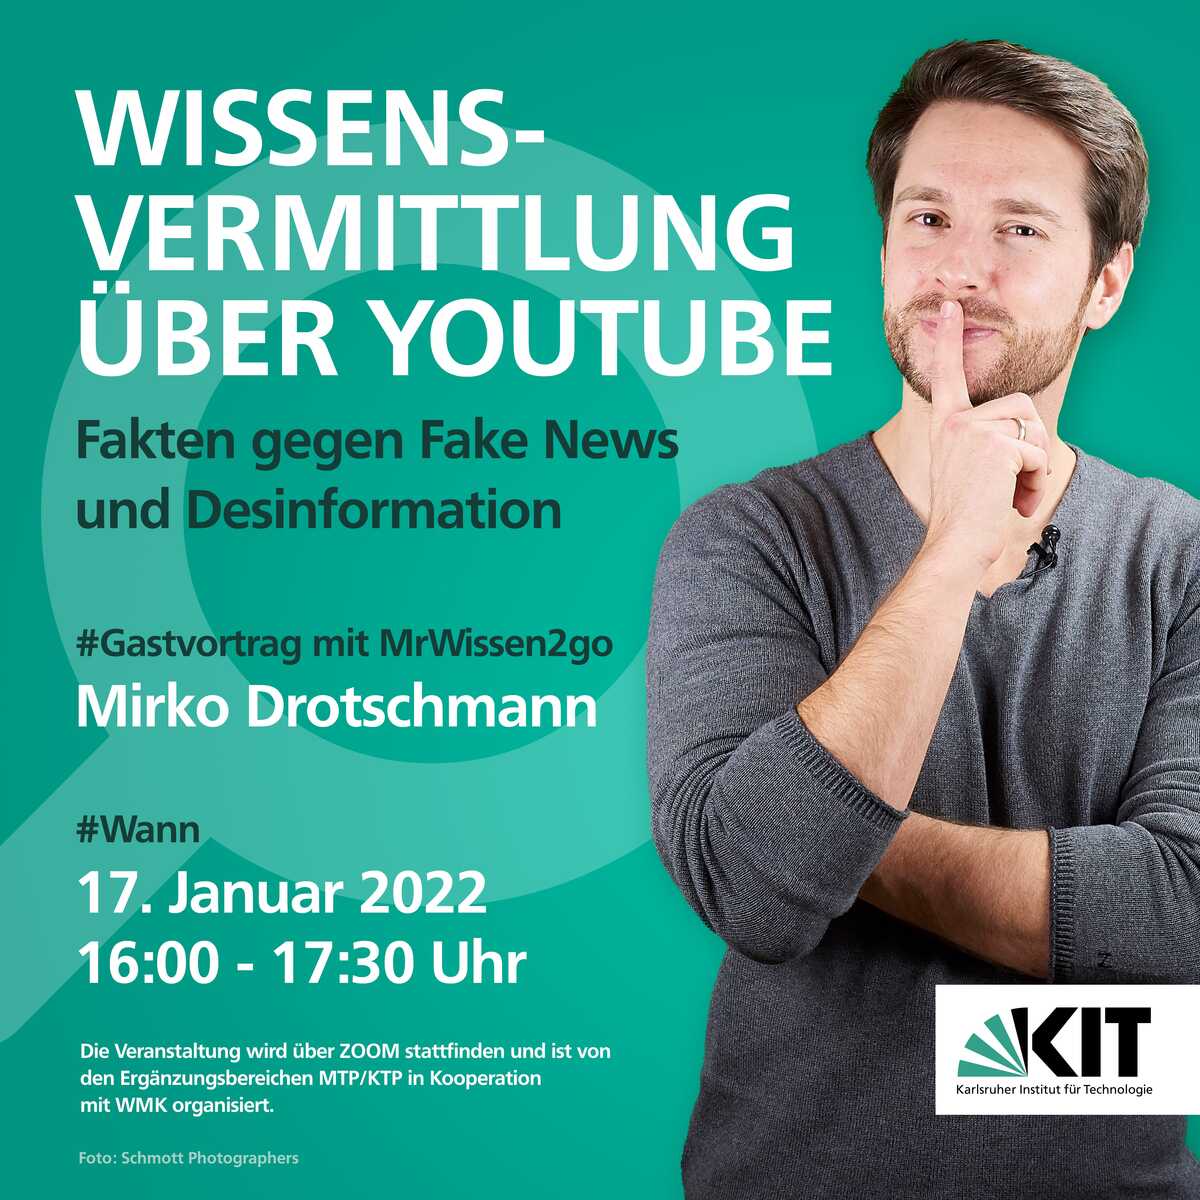 Ankündigungsplakat zum Gastvortrag von Mirko Drotschmann am 17.01.22. Auf dem Plakat ist eine Fotografie von Mirko Drotschmann zu sehen. 